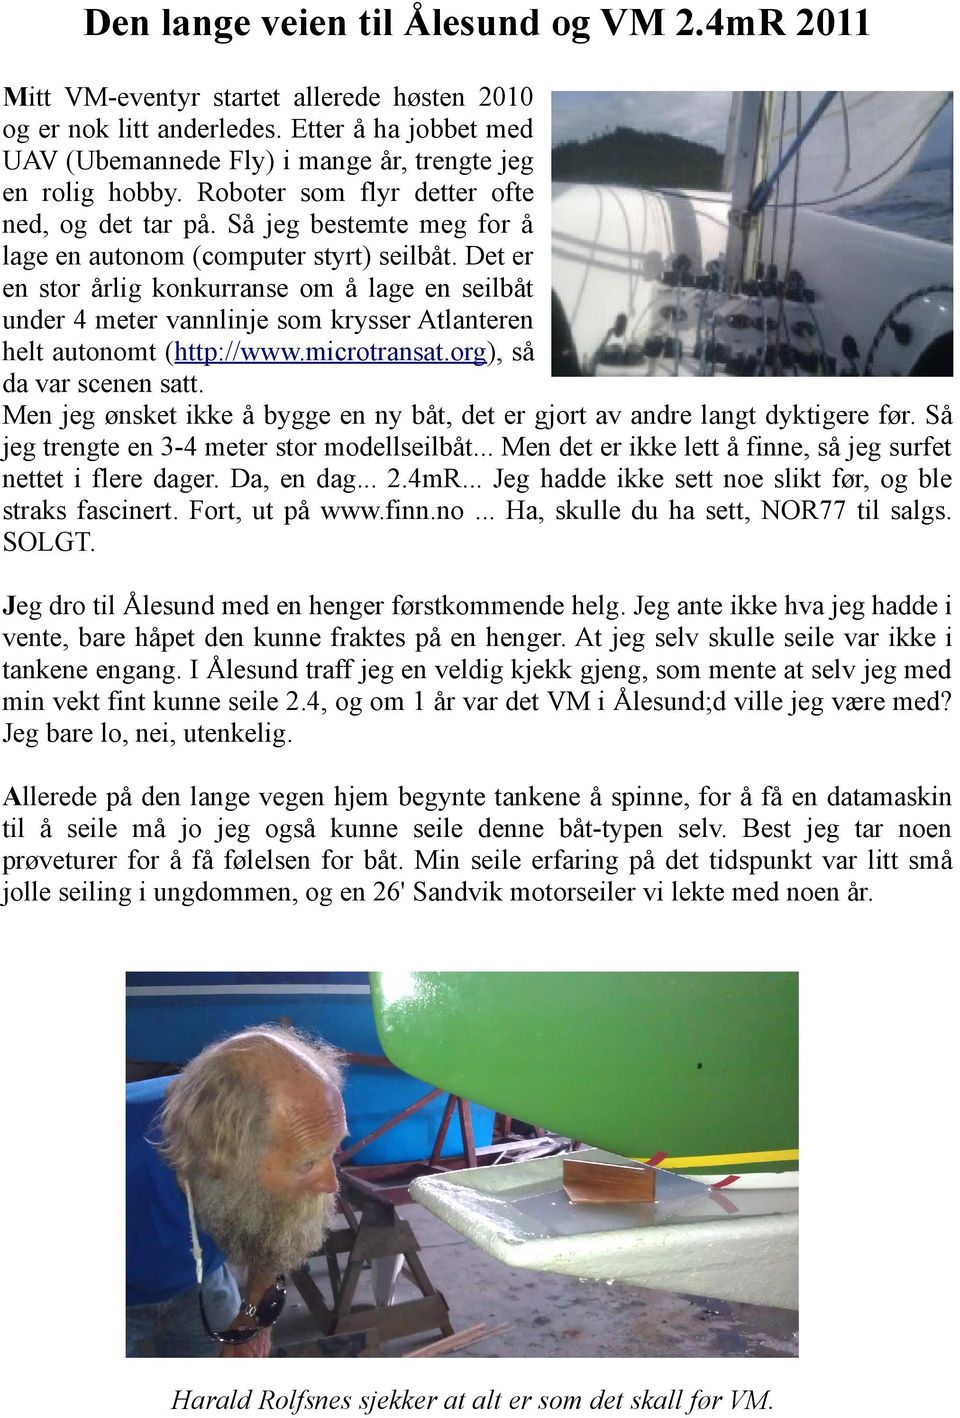 Det er en stor årlig konkurranse om å lage en seilbåt under 4 meter vannlinje som krysser Atlanteren helt autonomt (http://www.microtransat.org), så da var scenen satt.